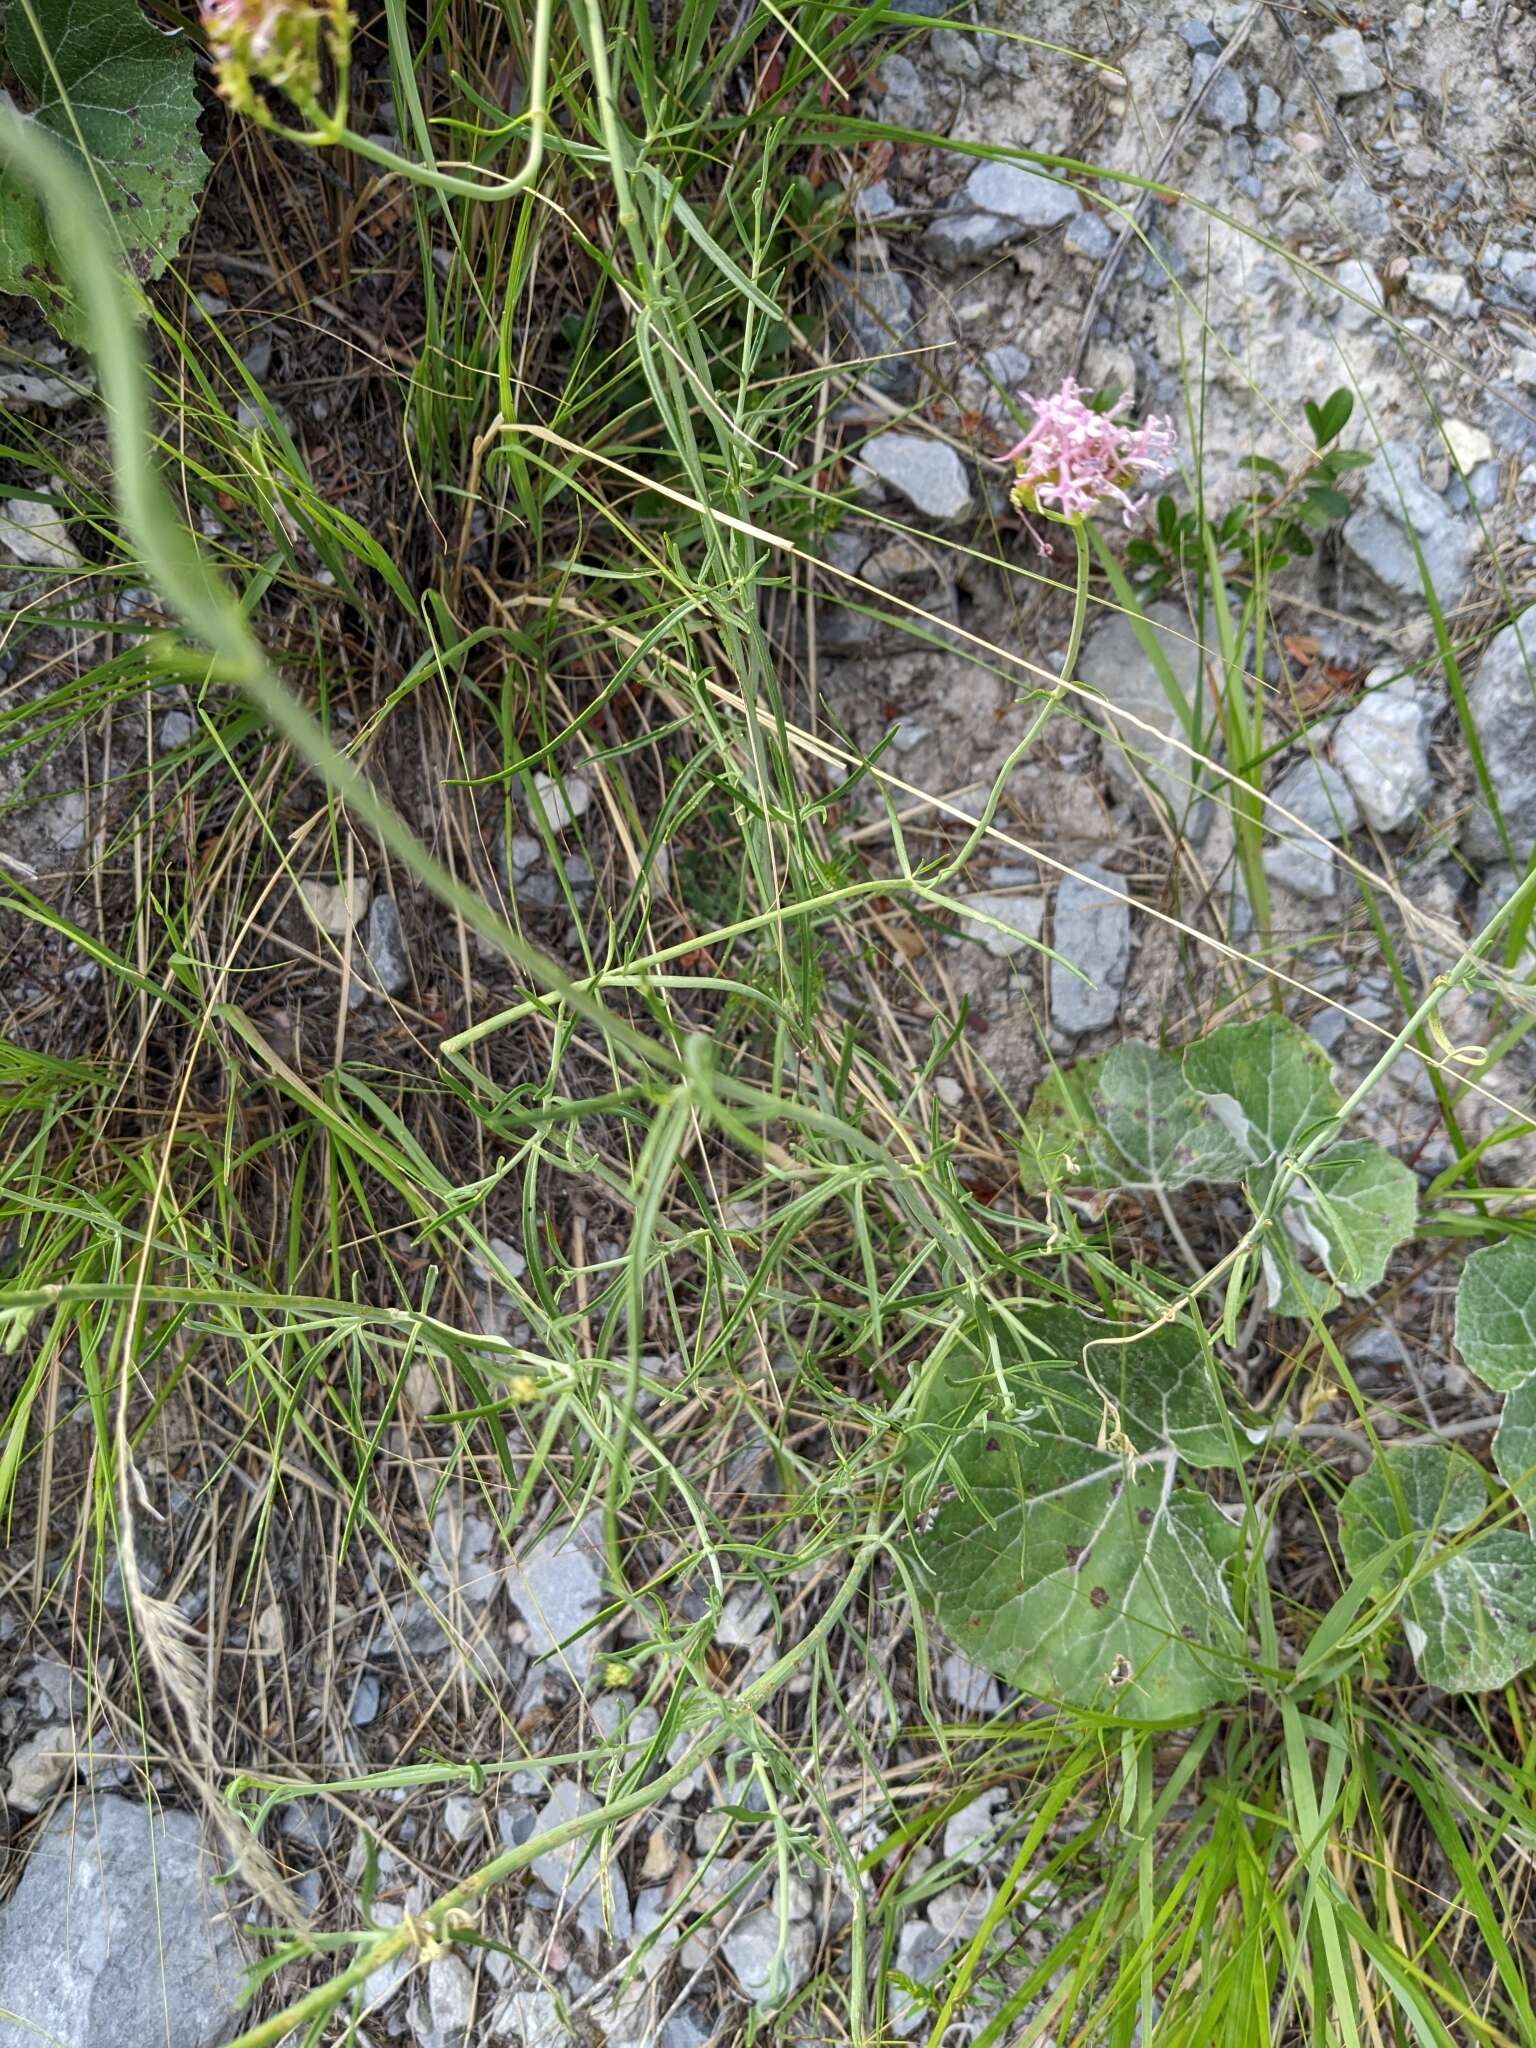 Image of Centranthus angustifolius (Miller) DC.